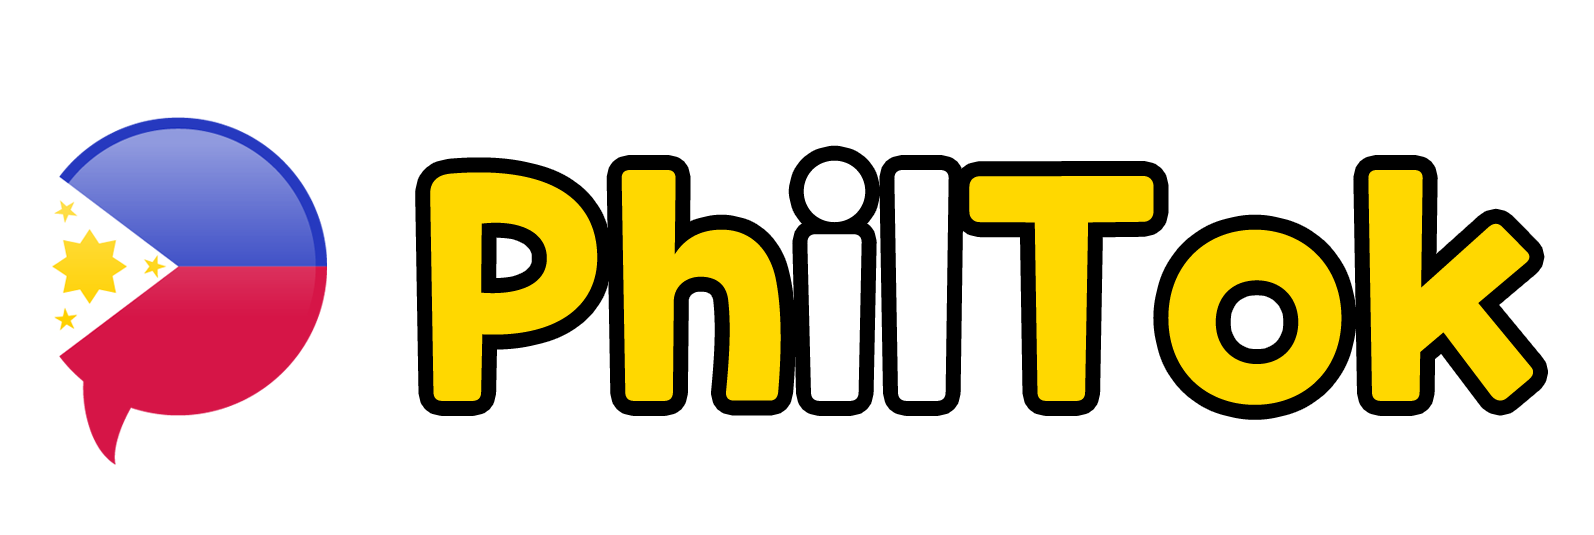 필톡-필리핀여행정보커뮤니티